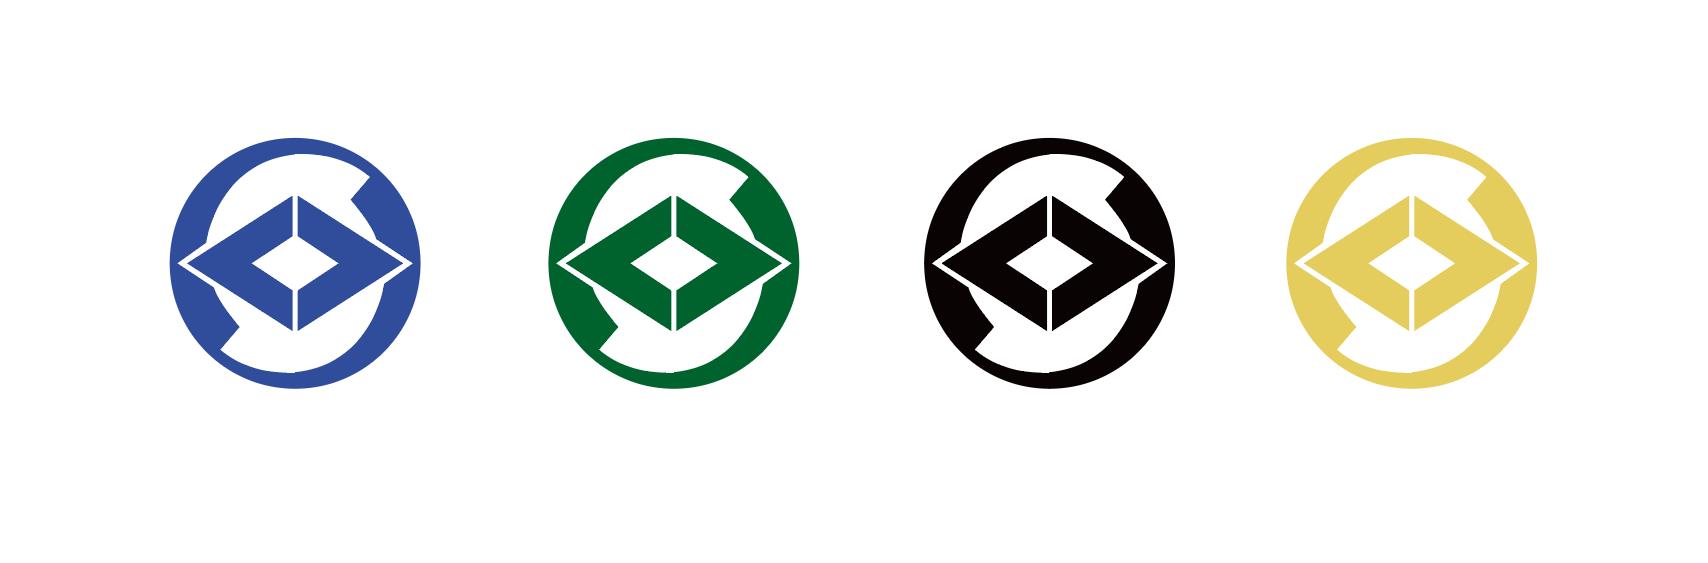 한국세무사회 로고 디자인